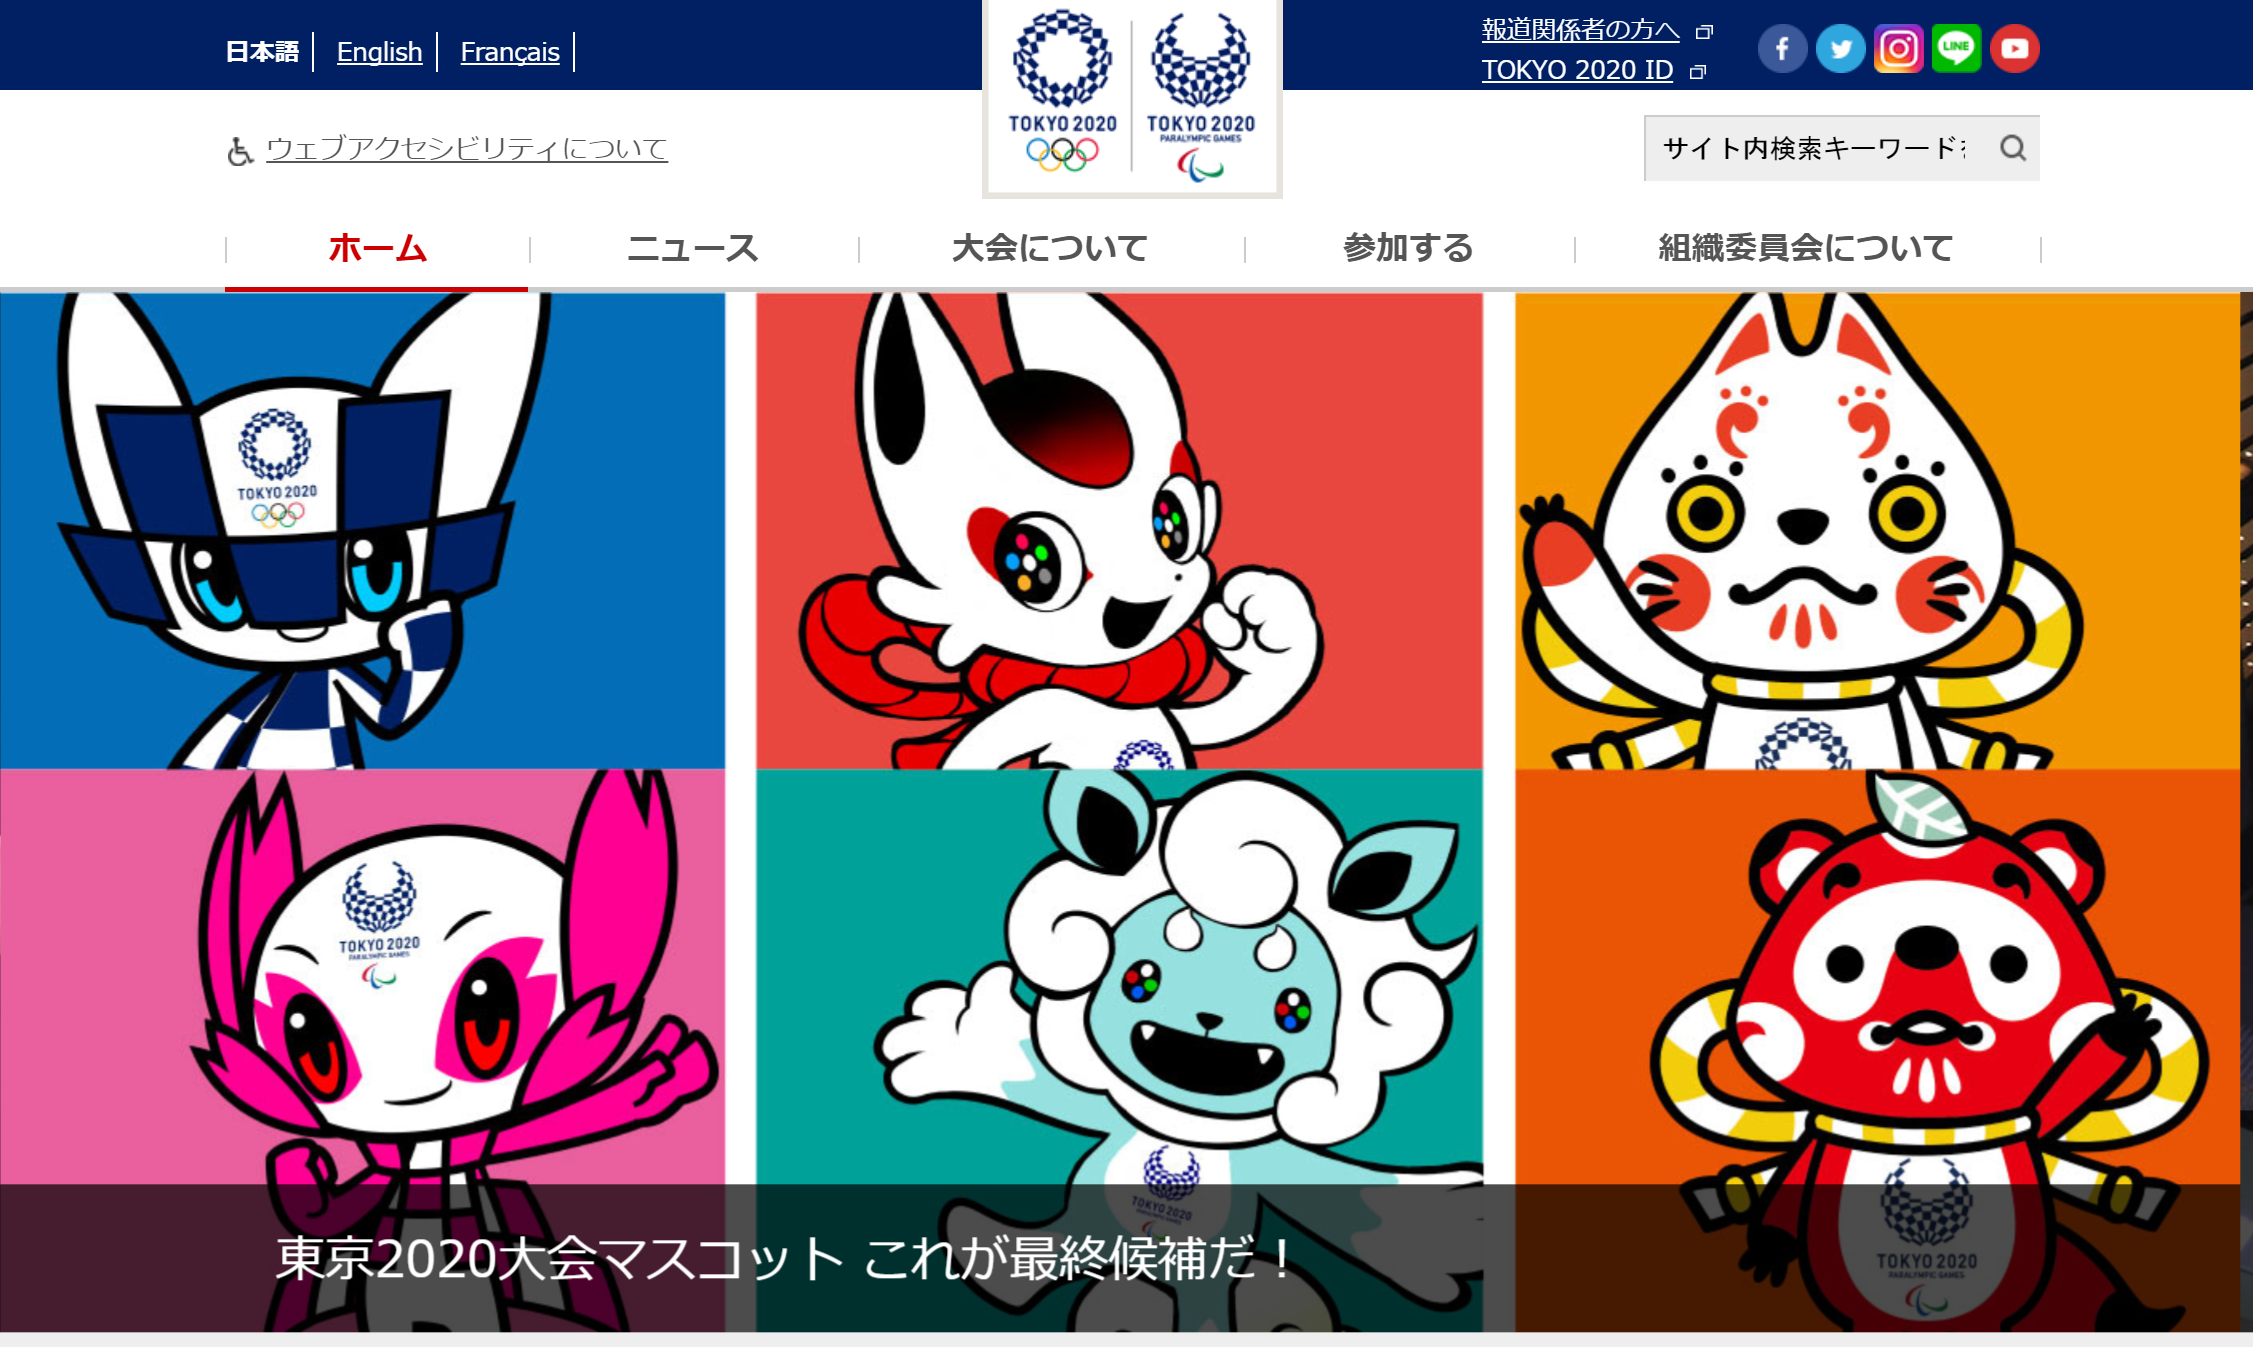 東京オリンピック公式サイトで発表されたマスコット3案。左から、「ア」案、「イ」案、「ウ」案（東京オリンピック・パラリンピック公式サイトトップページより）